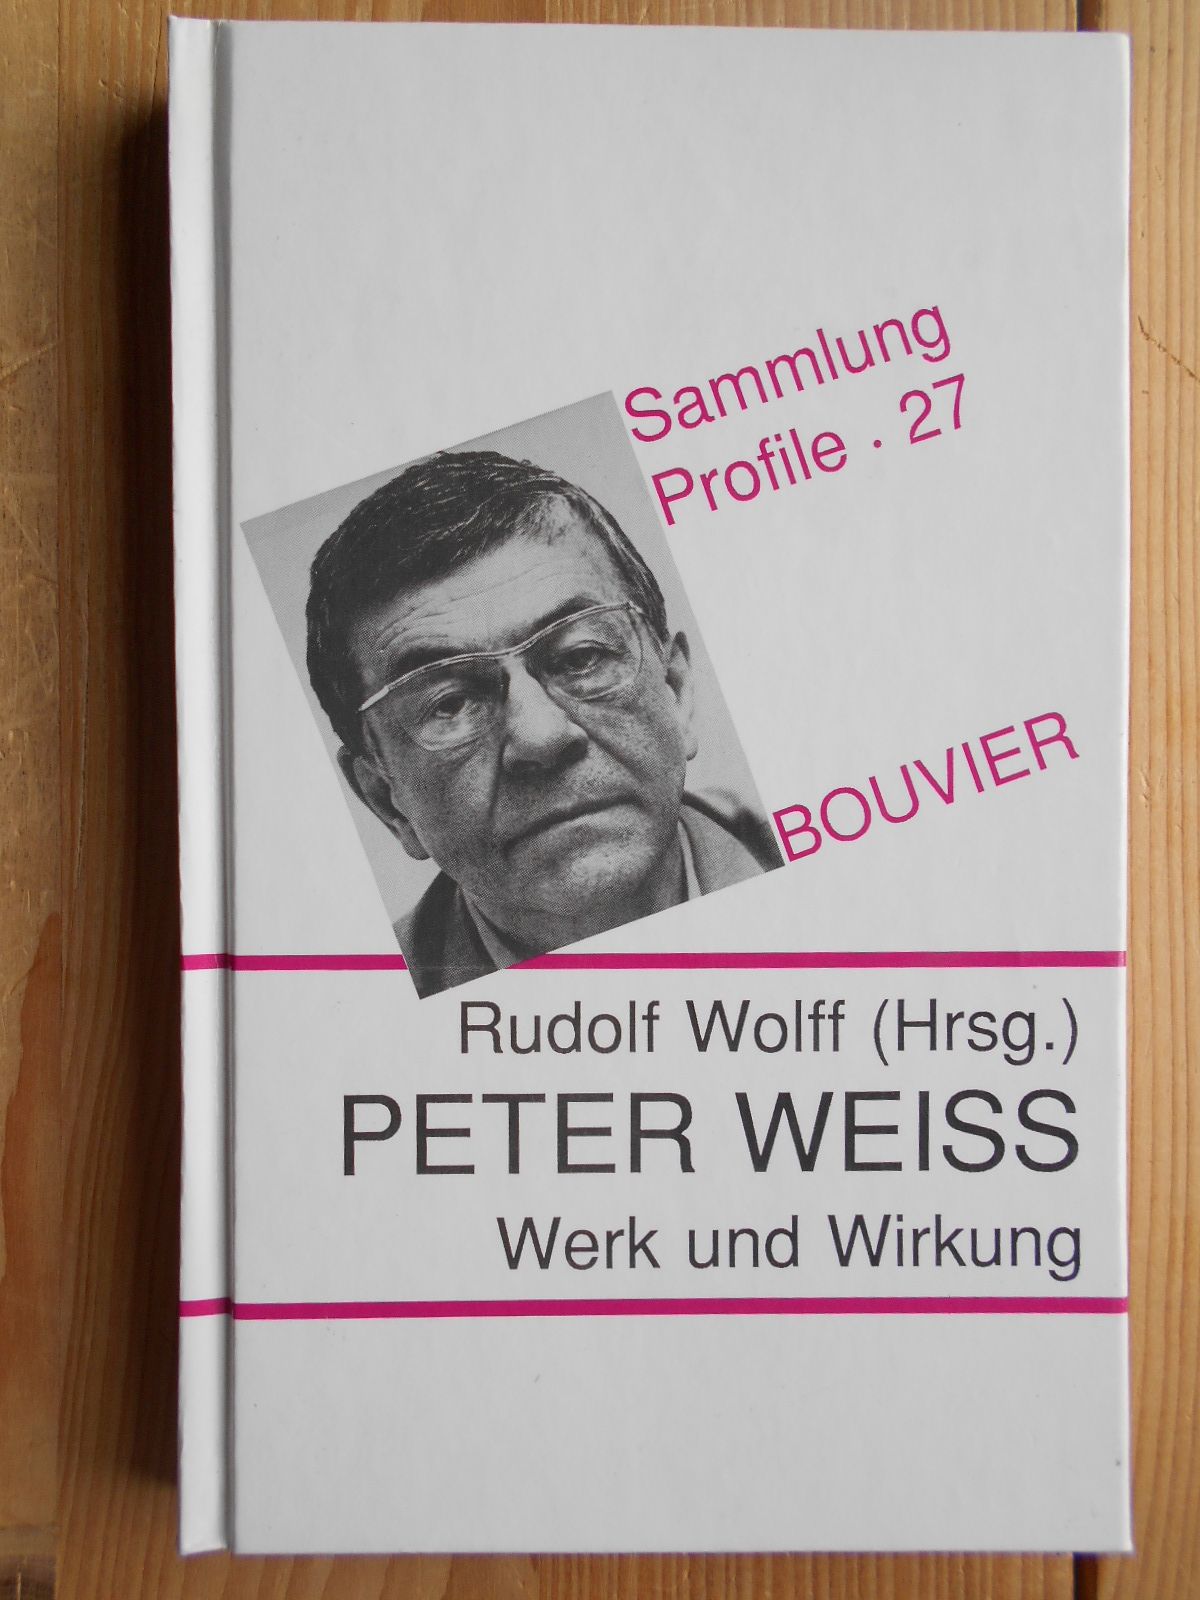 Peter Weiss : Werk und Wirkung. hrsg. von Rudolf Wolff / Sammlung Profile ; Bd. 27 - Wolff, Rudolf (Hrsg.)